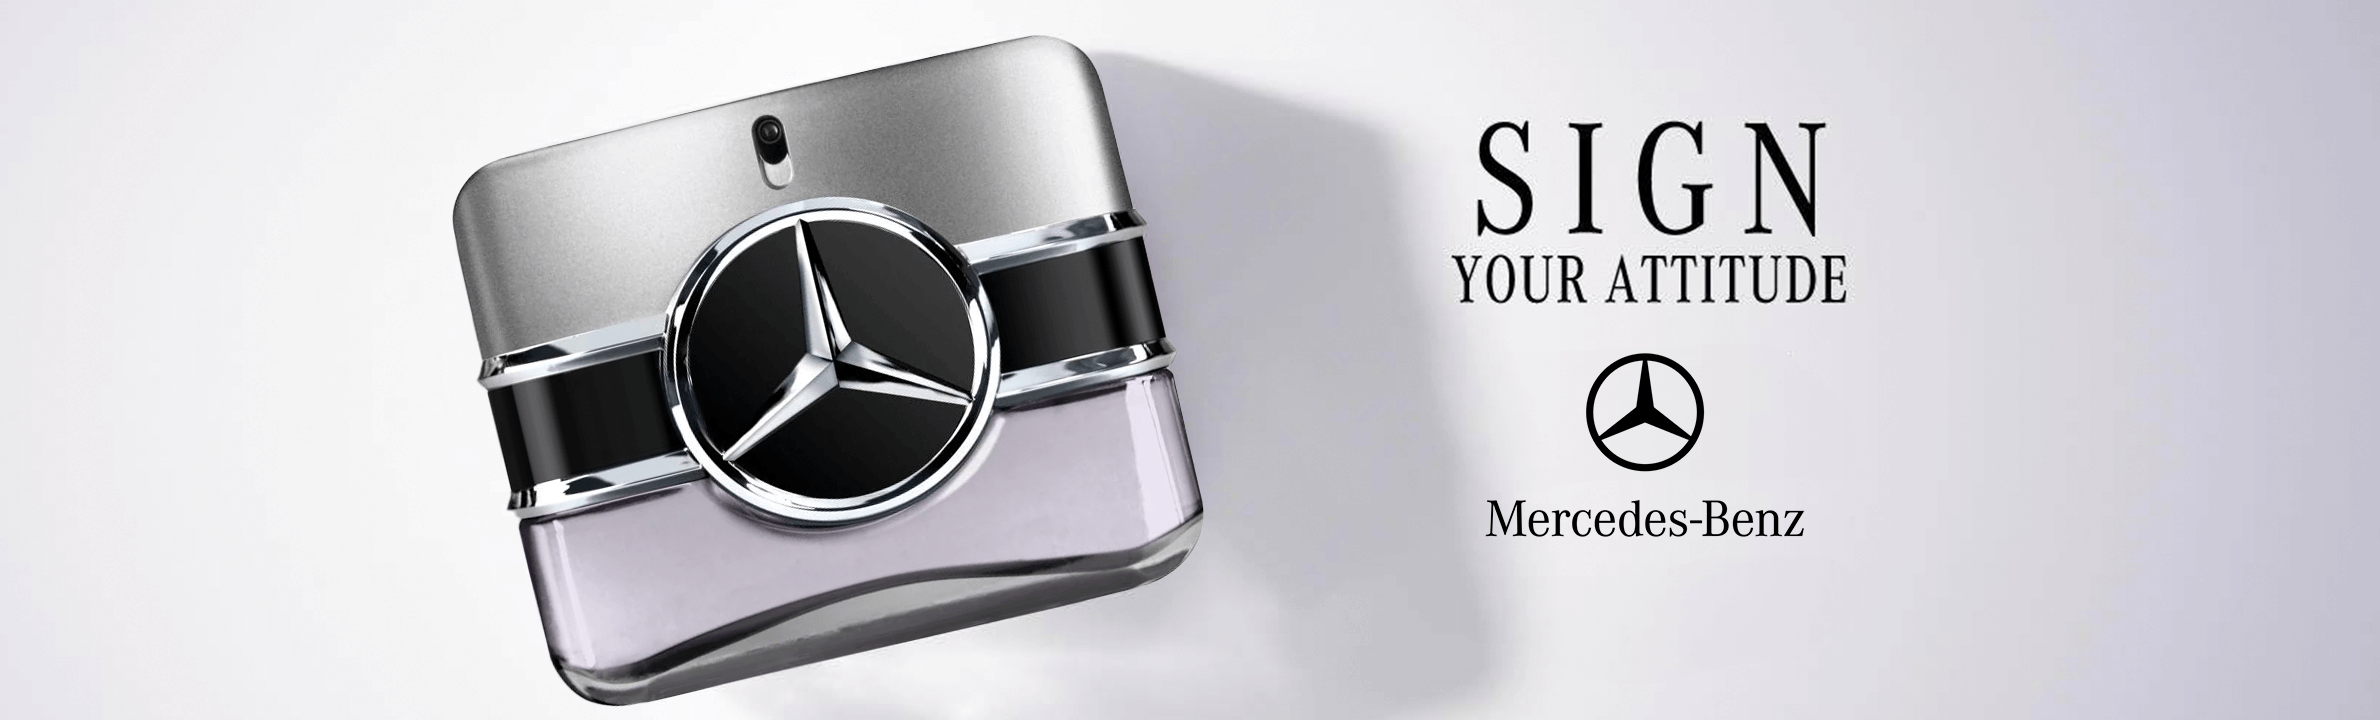 Novo Mercedes-Benz Sign You Attitude